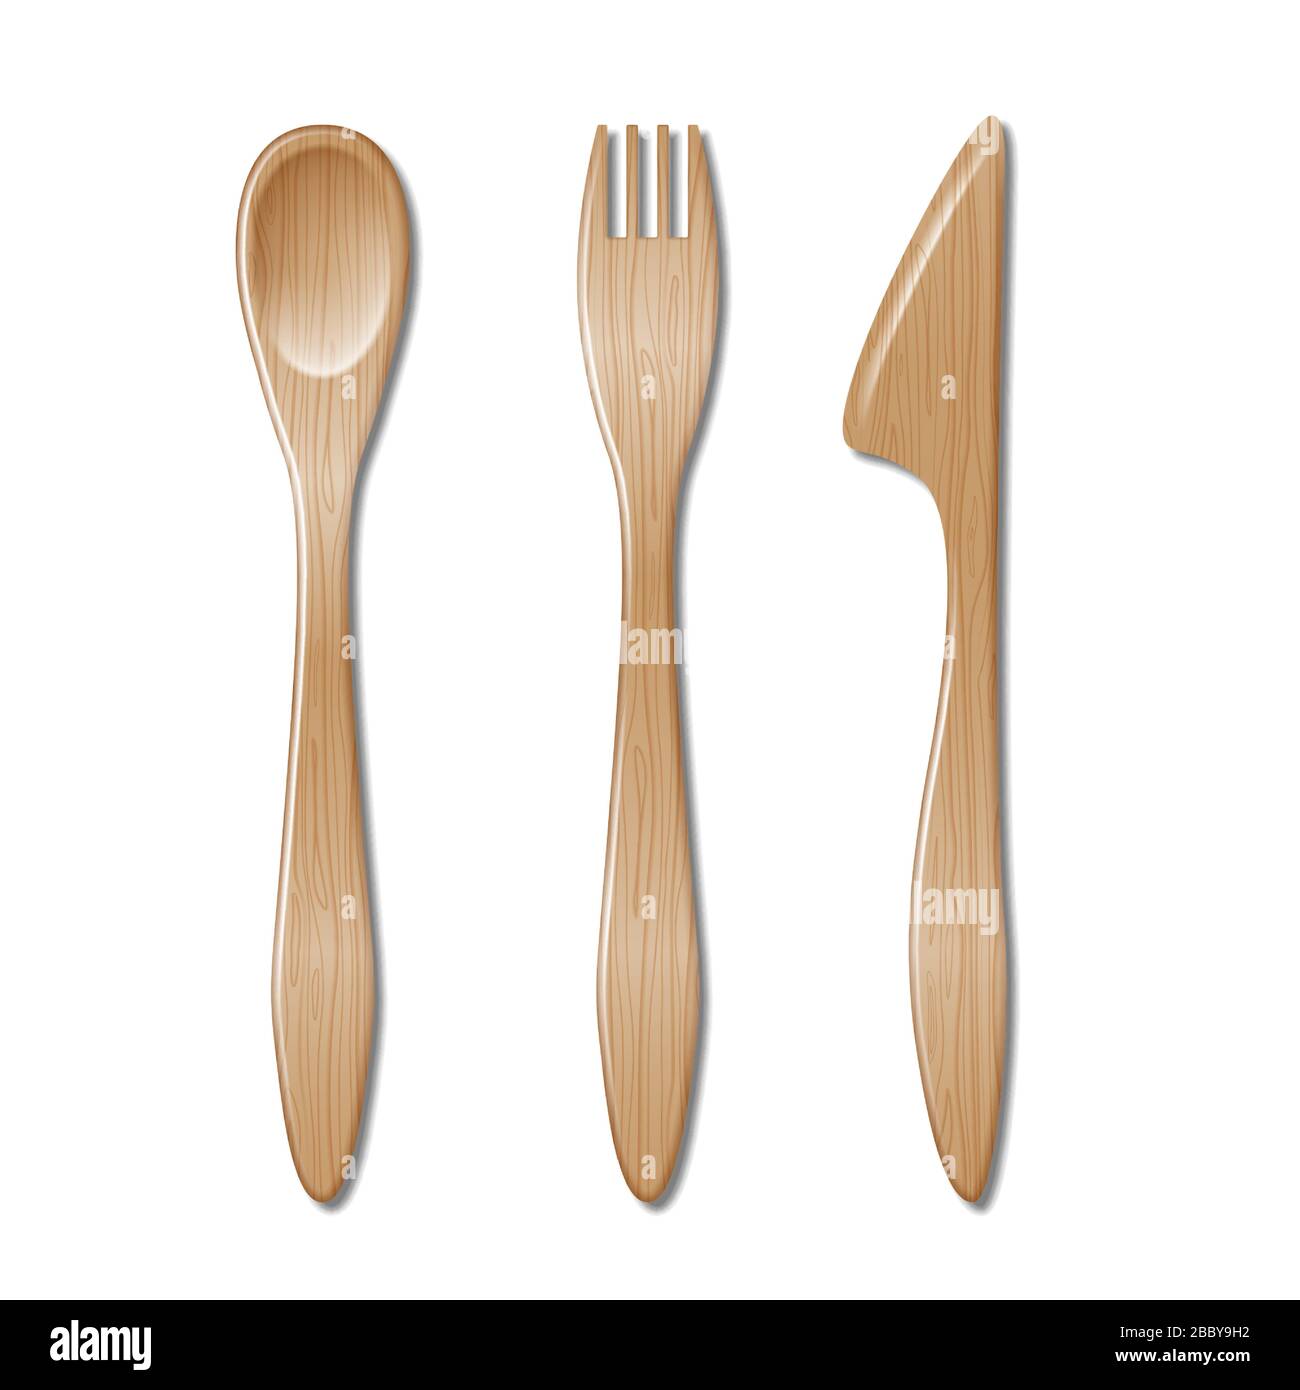 Cucchiaio, forchetta e coltello isolati su sfondo bianco. Set di posate in legno, cucchiaio, forchetta monouso e coltello. Illustrazione vettoriale. Illustrazione Vettoriale